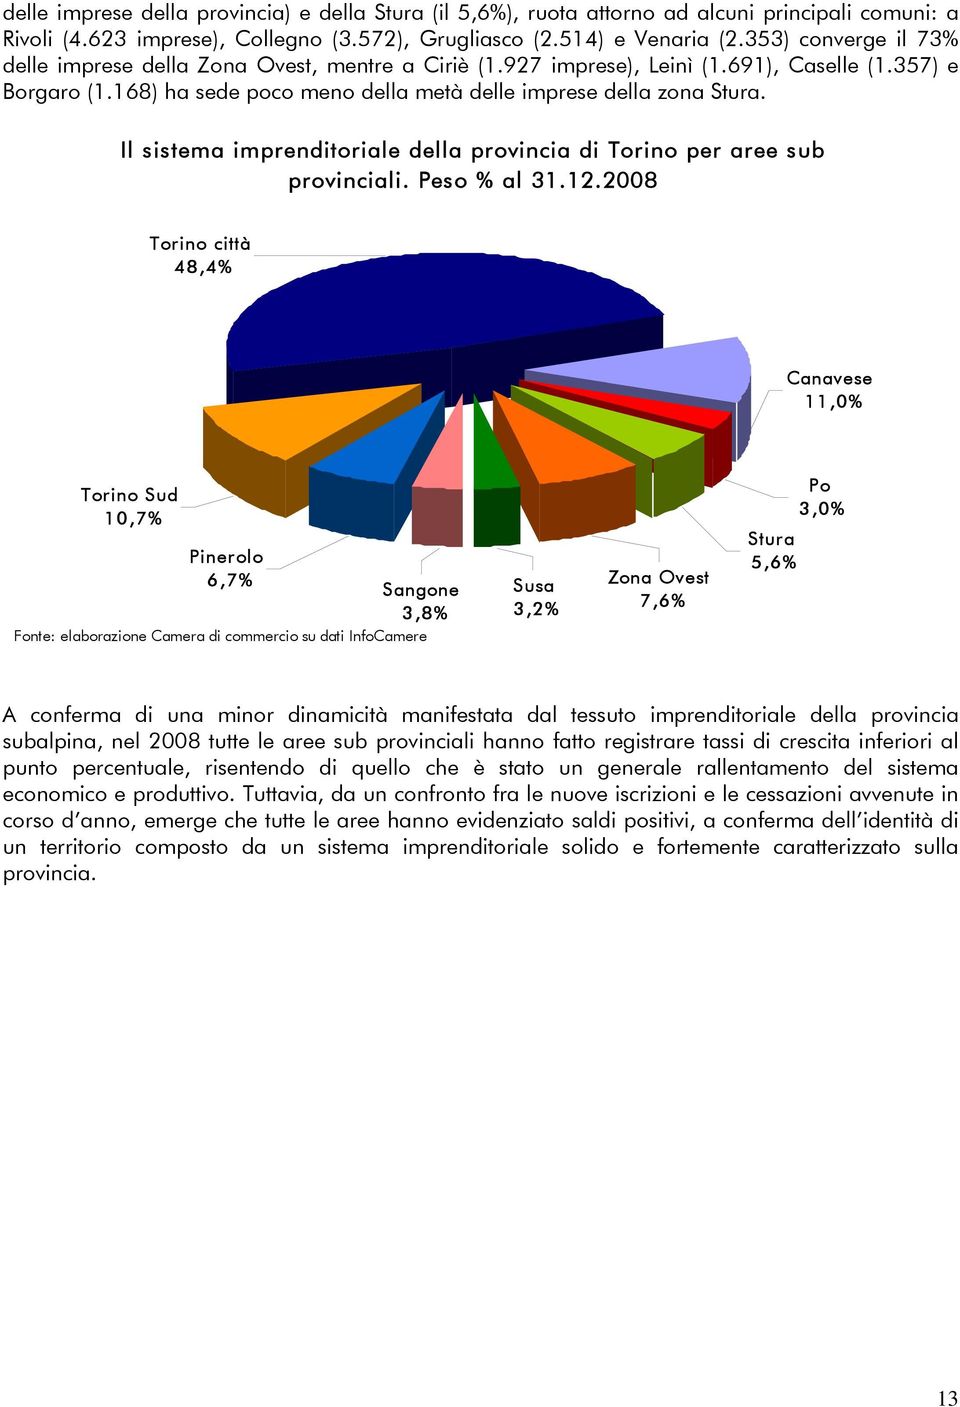 Il sistema imprenditoriale della provincia di Torino per aree sub provinciali. Peso % al 31.12.